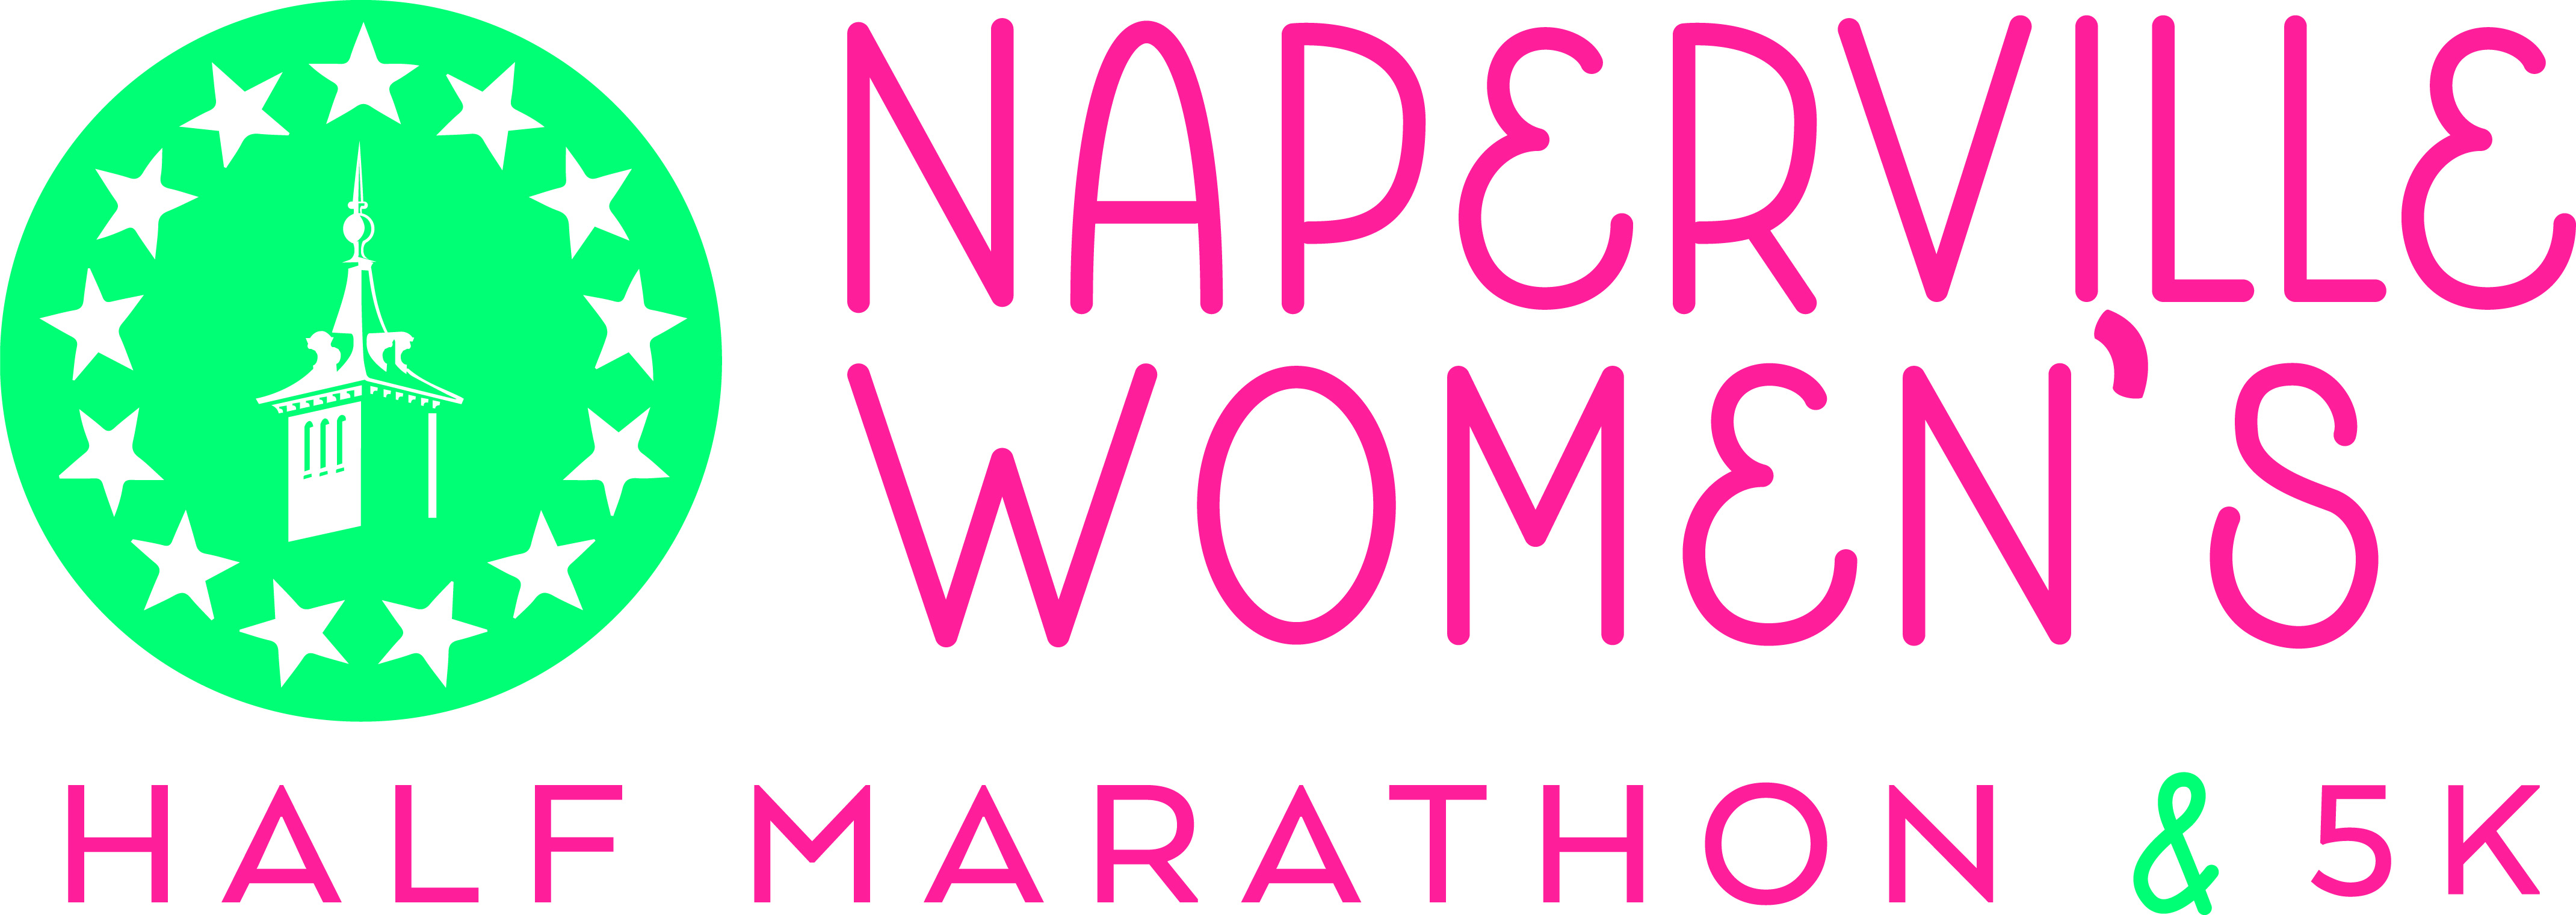 Naperville Women’s Half Marathon & 5K